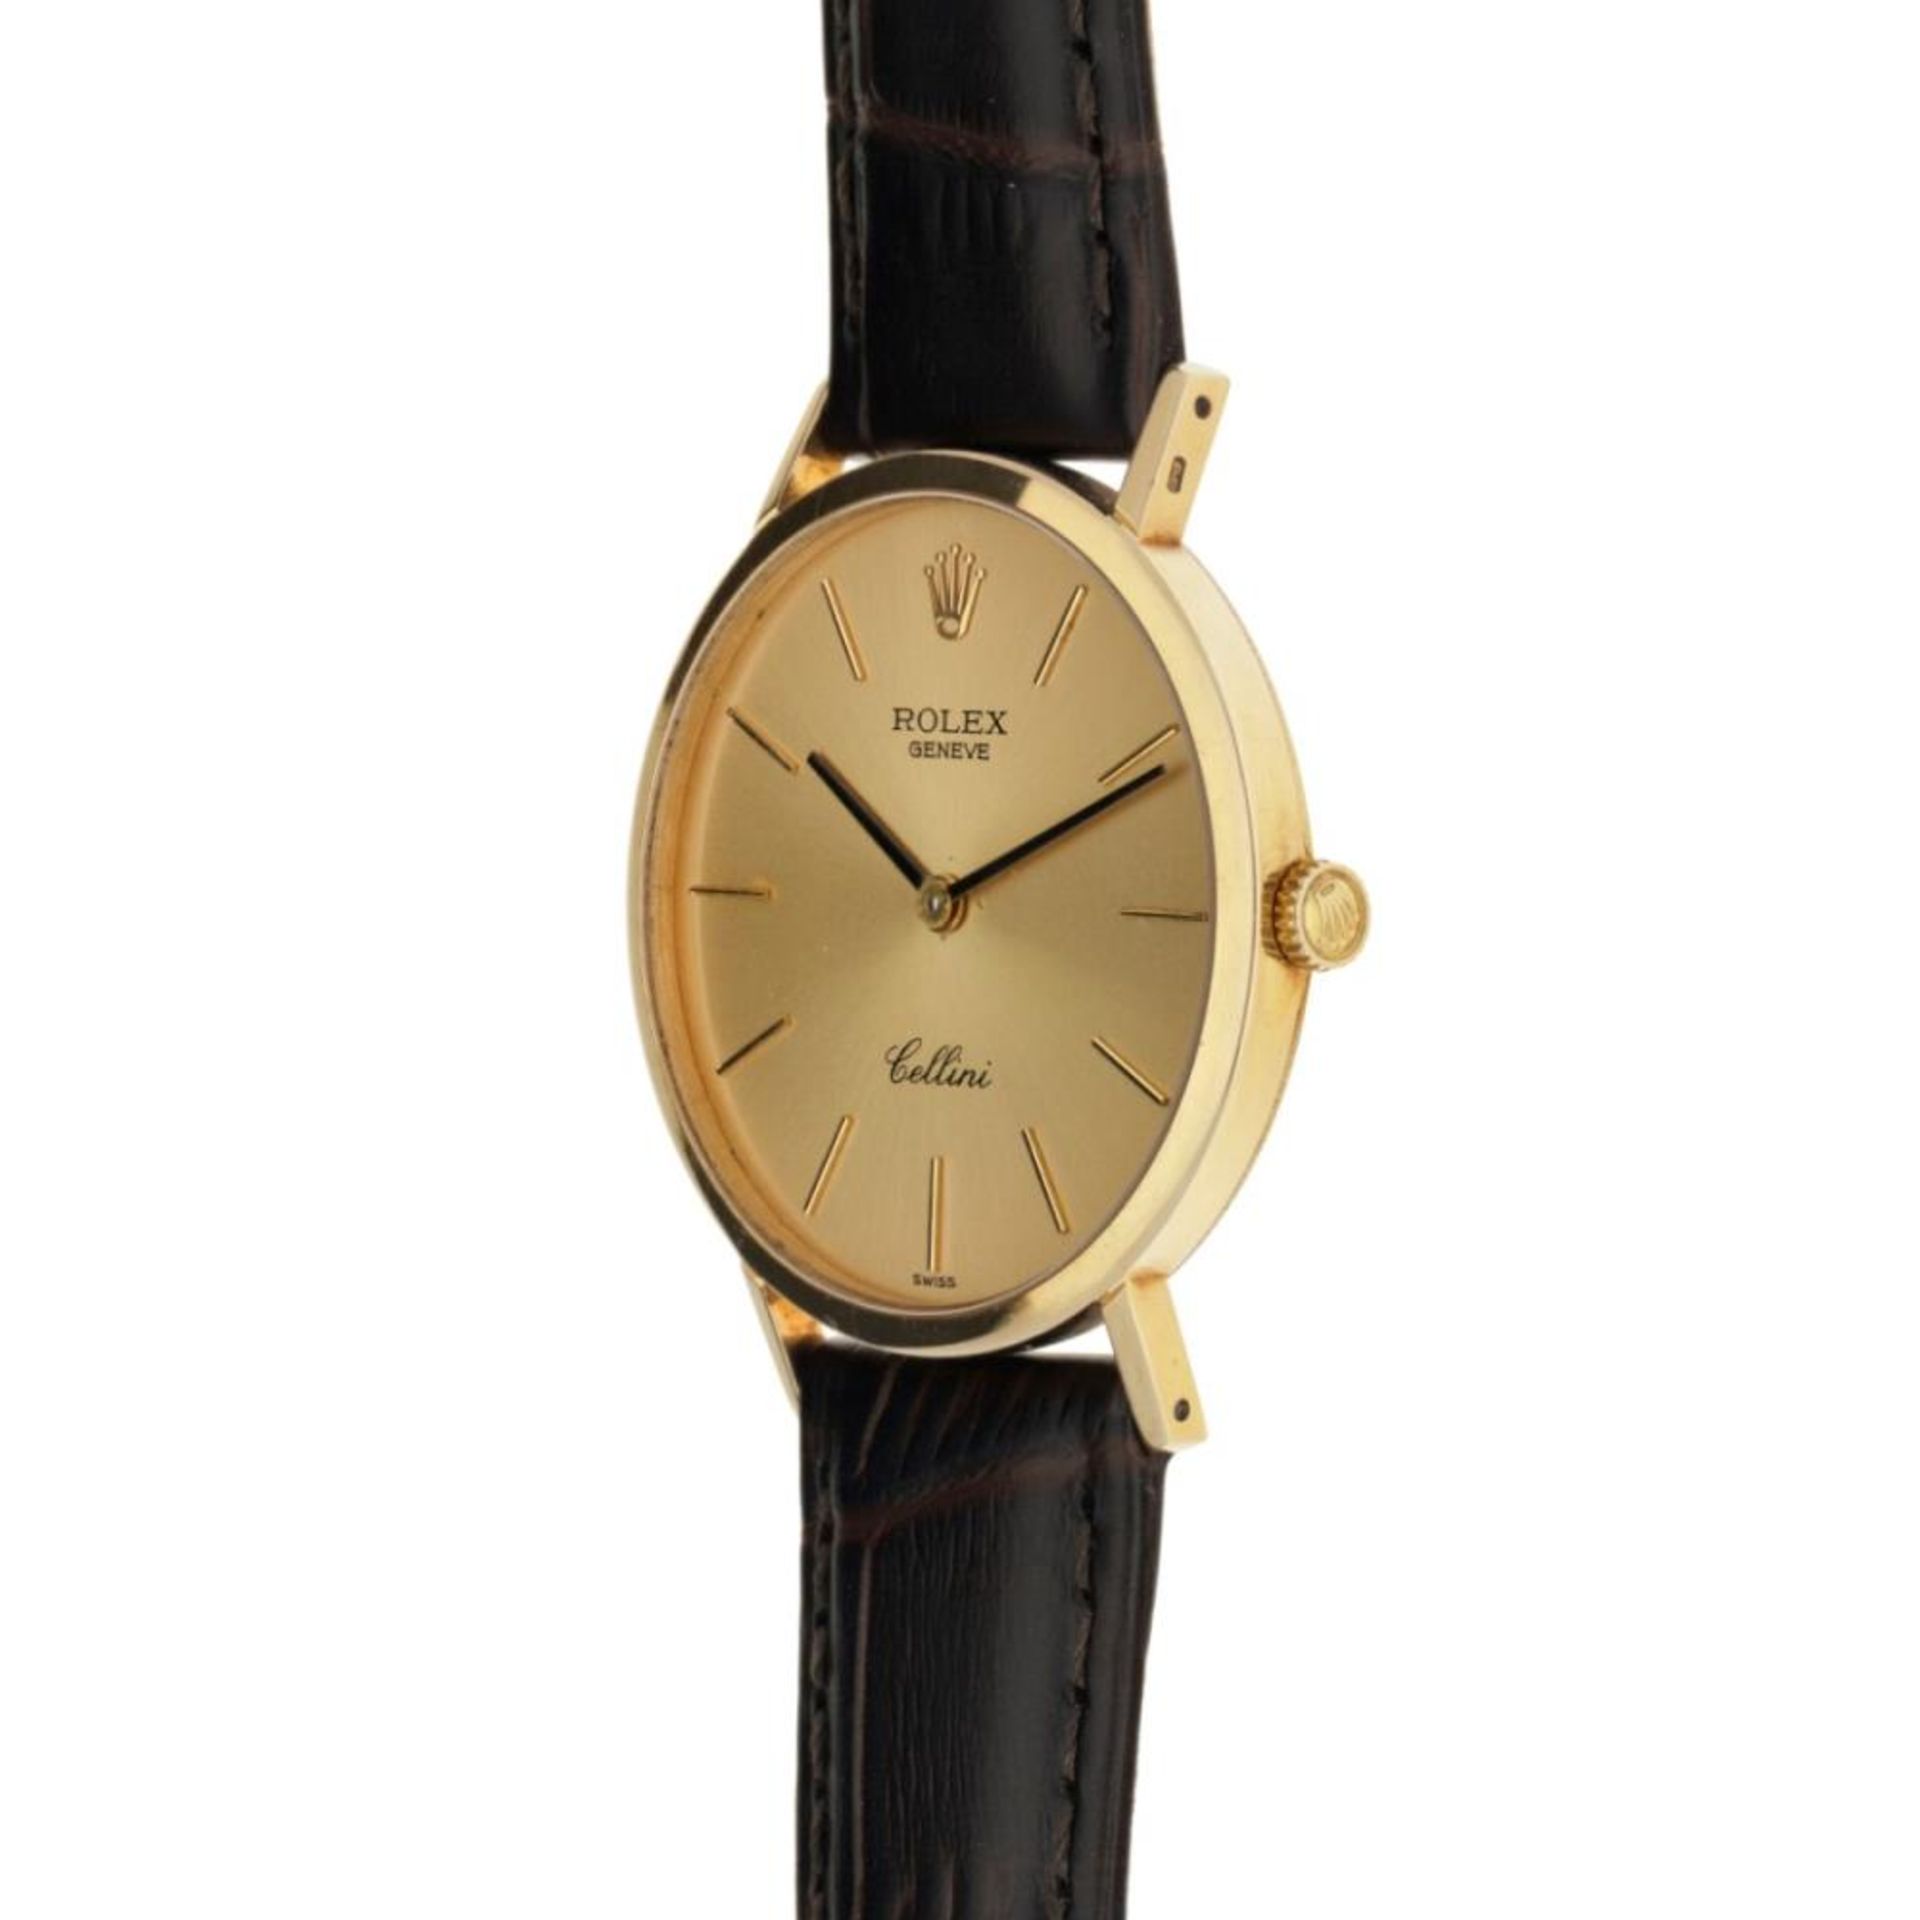 Rolex Cellini 4112 - Men's watch - approx. 1995. - Bild 5 aus 6